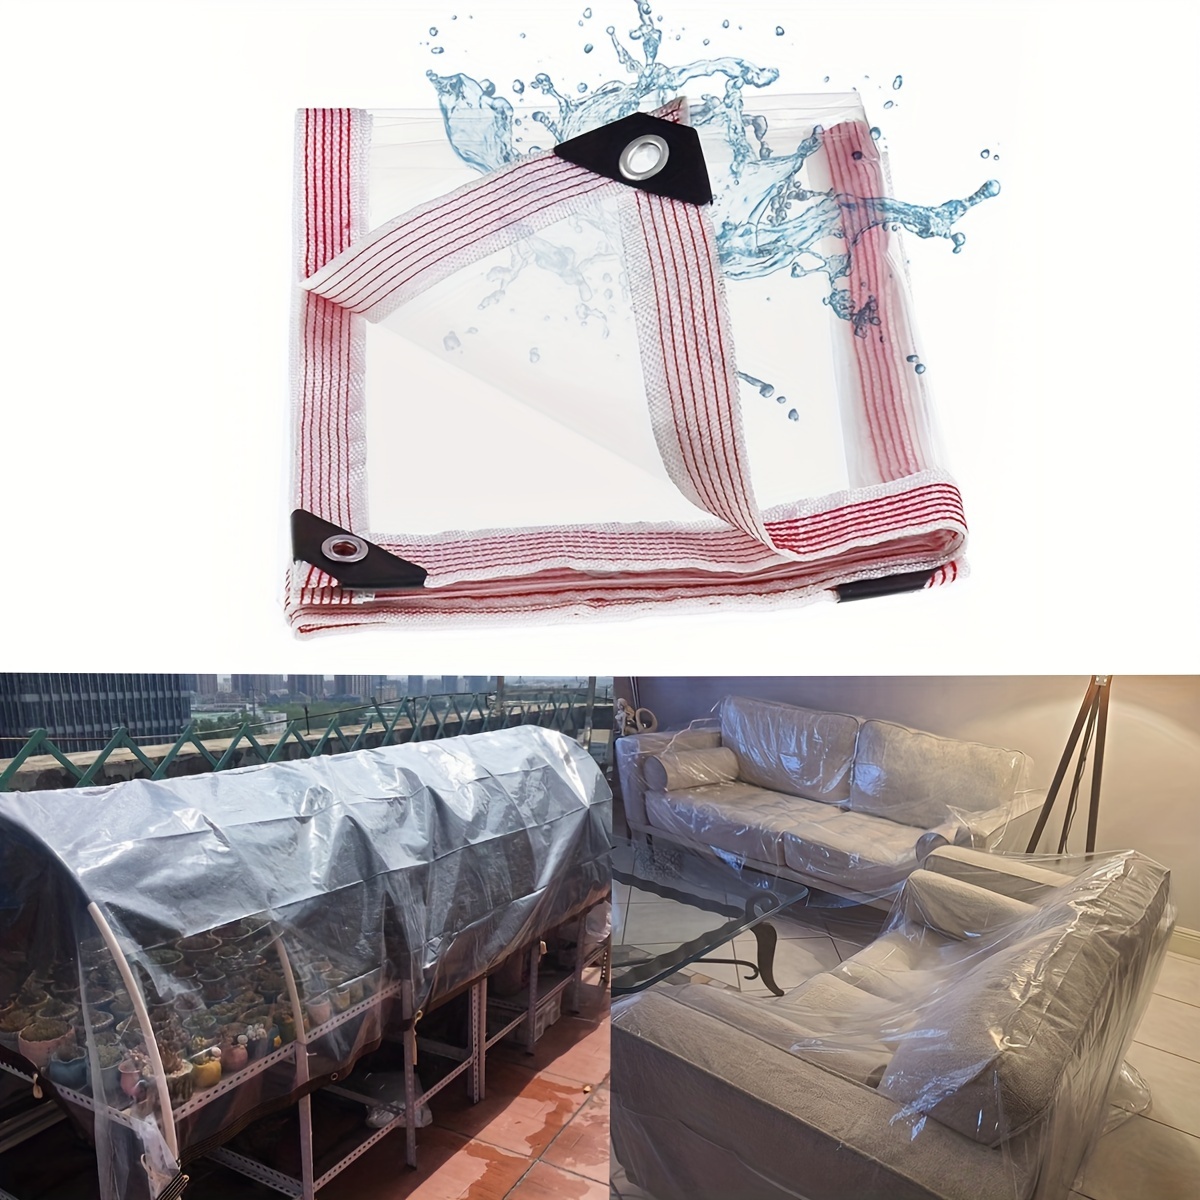 Lona transparente, lona impermeable, lona de vinilo de PVC transparente,  impermeable transparente con ojales, campamento resistente al agua, lluvia